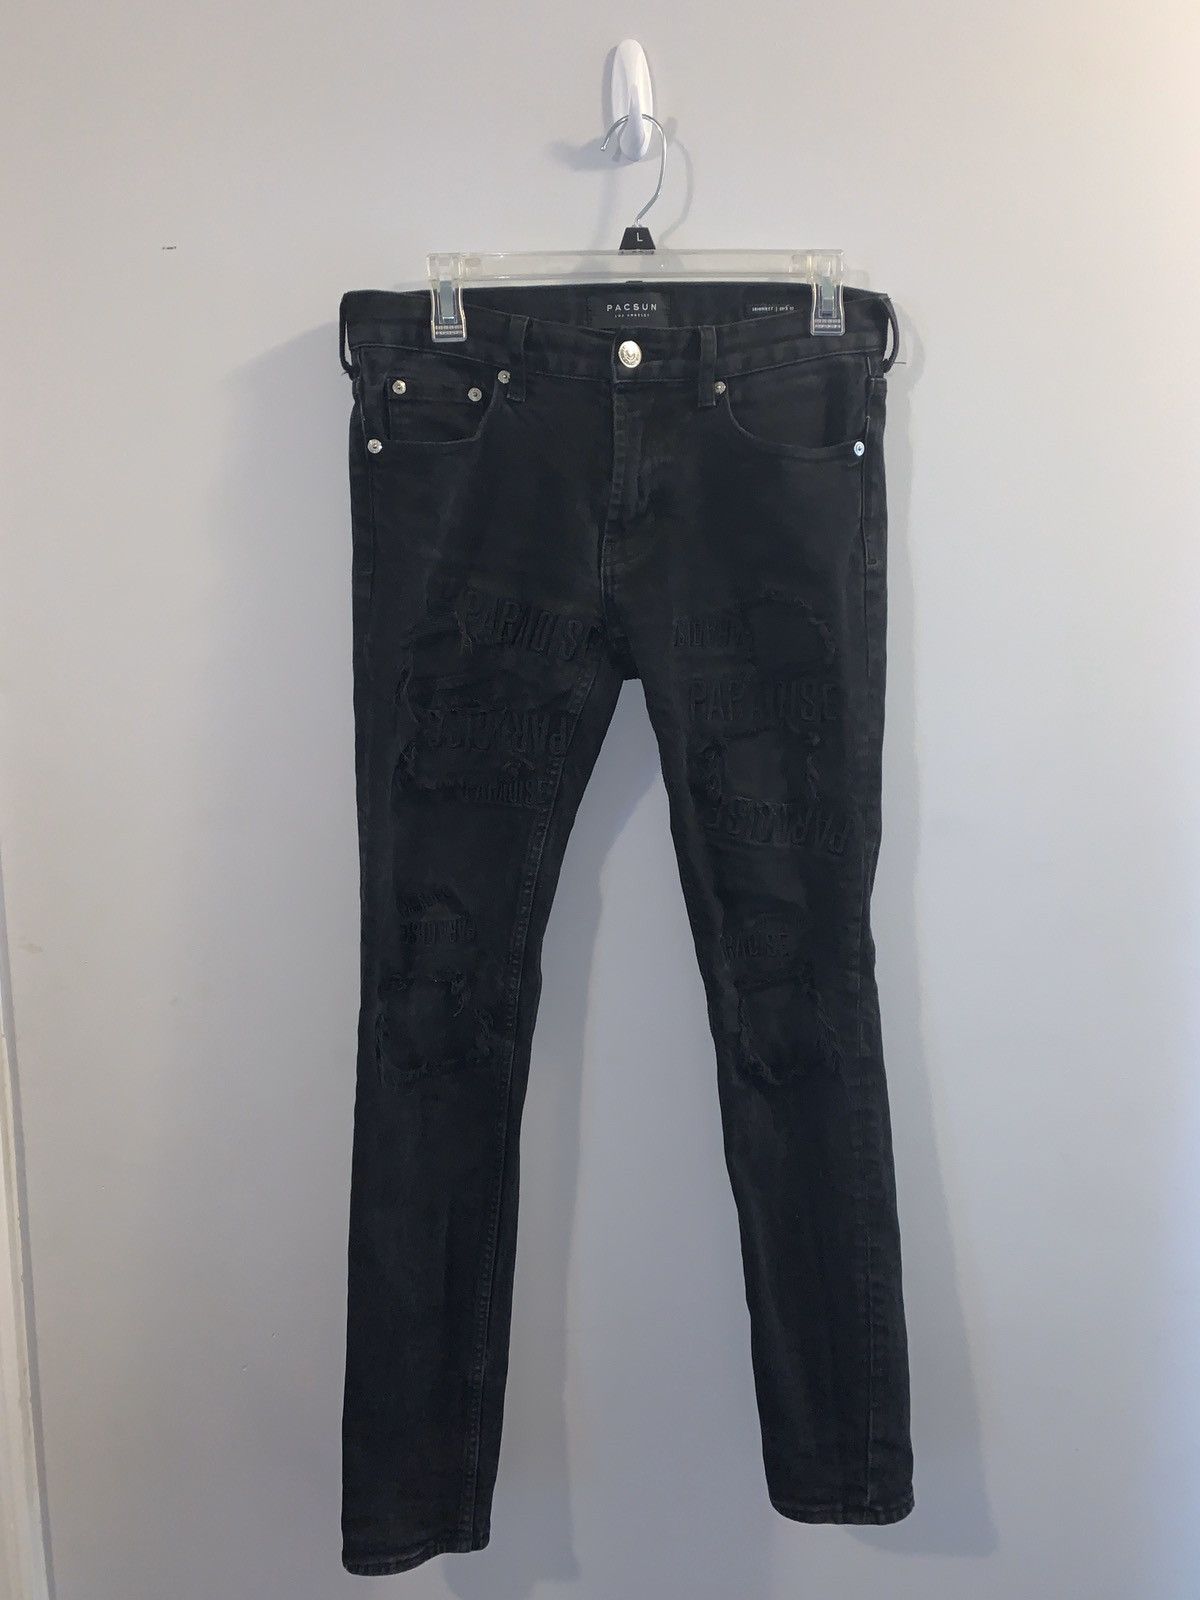 Pacsun Paradise black Jeans | Grailed